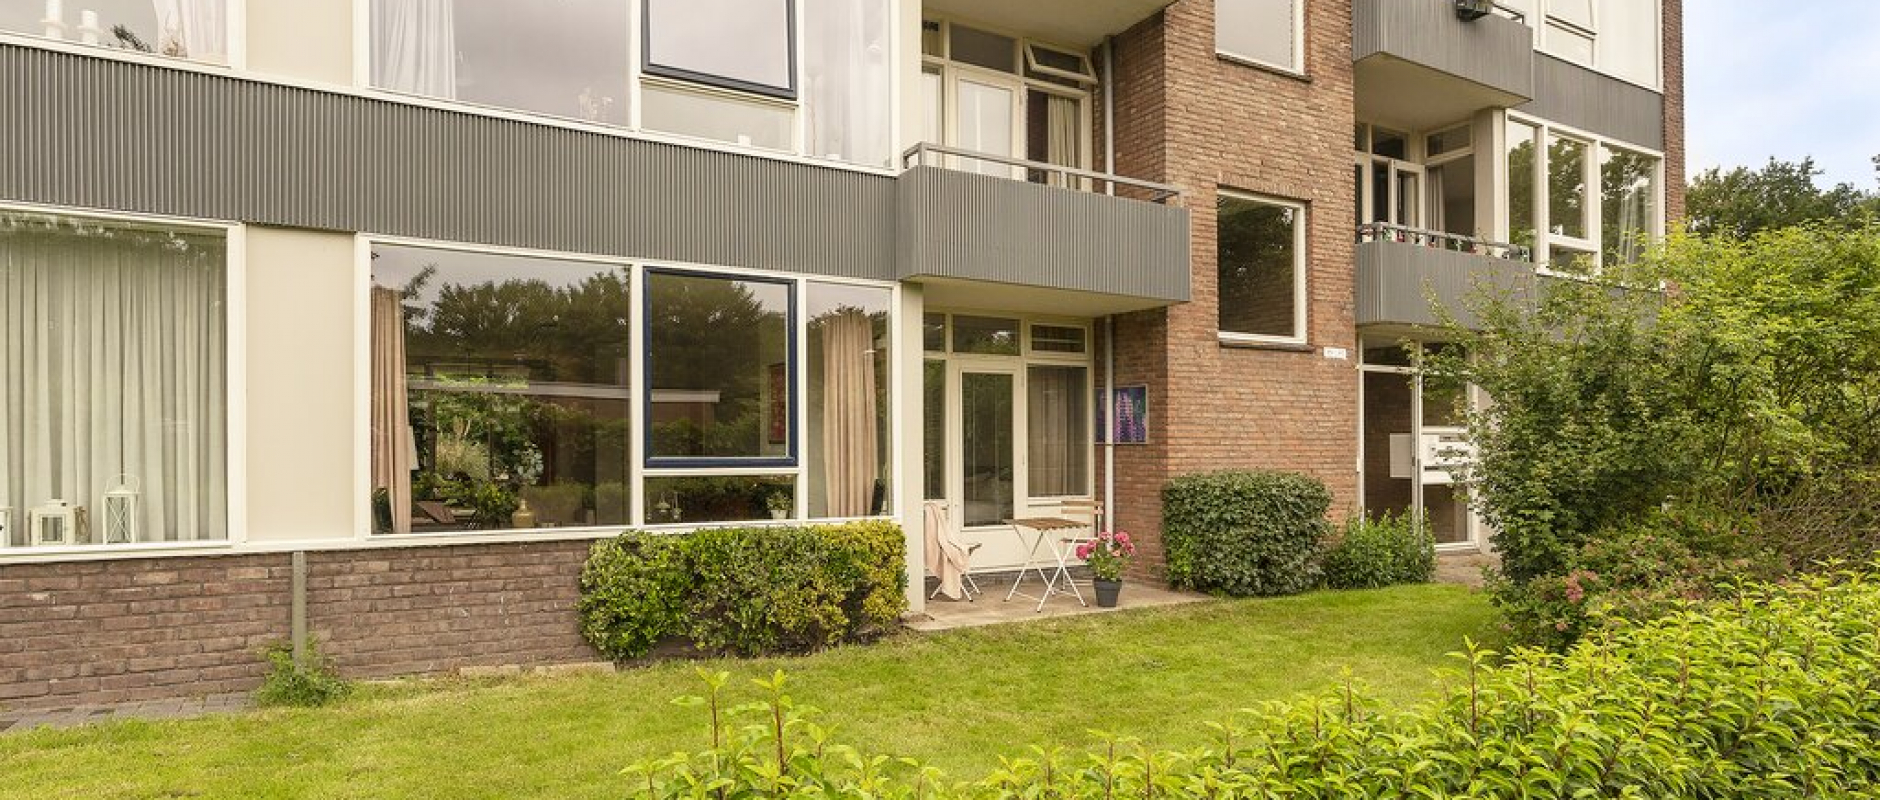 Woning te koop aan de Ruusbroecstraat 49 te Zwolle